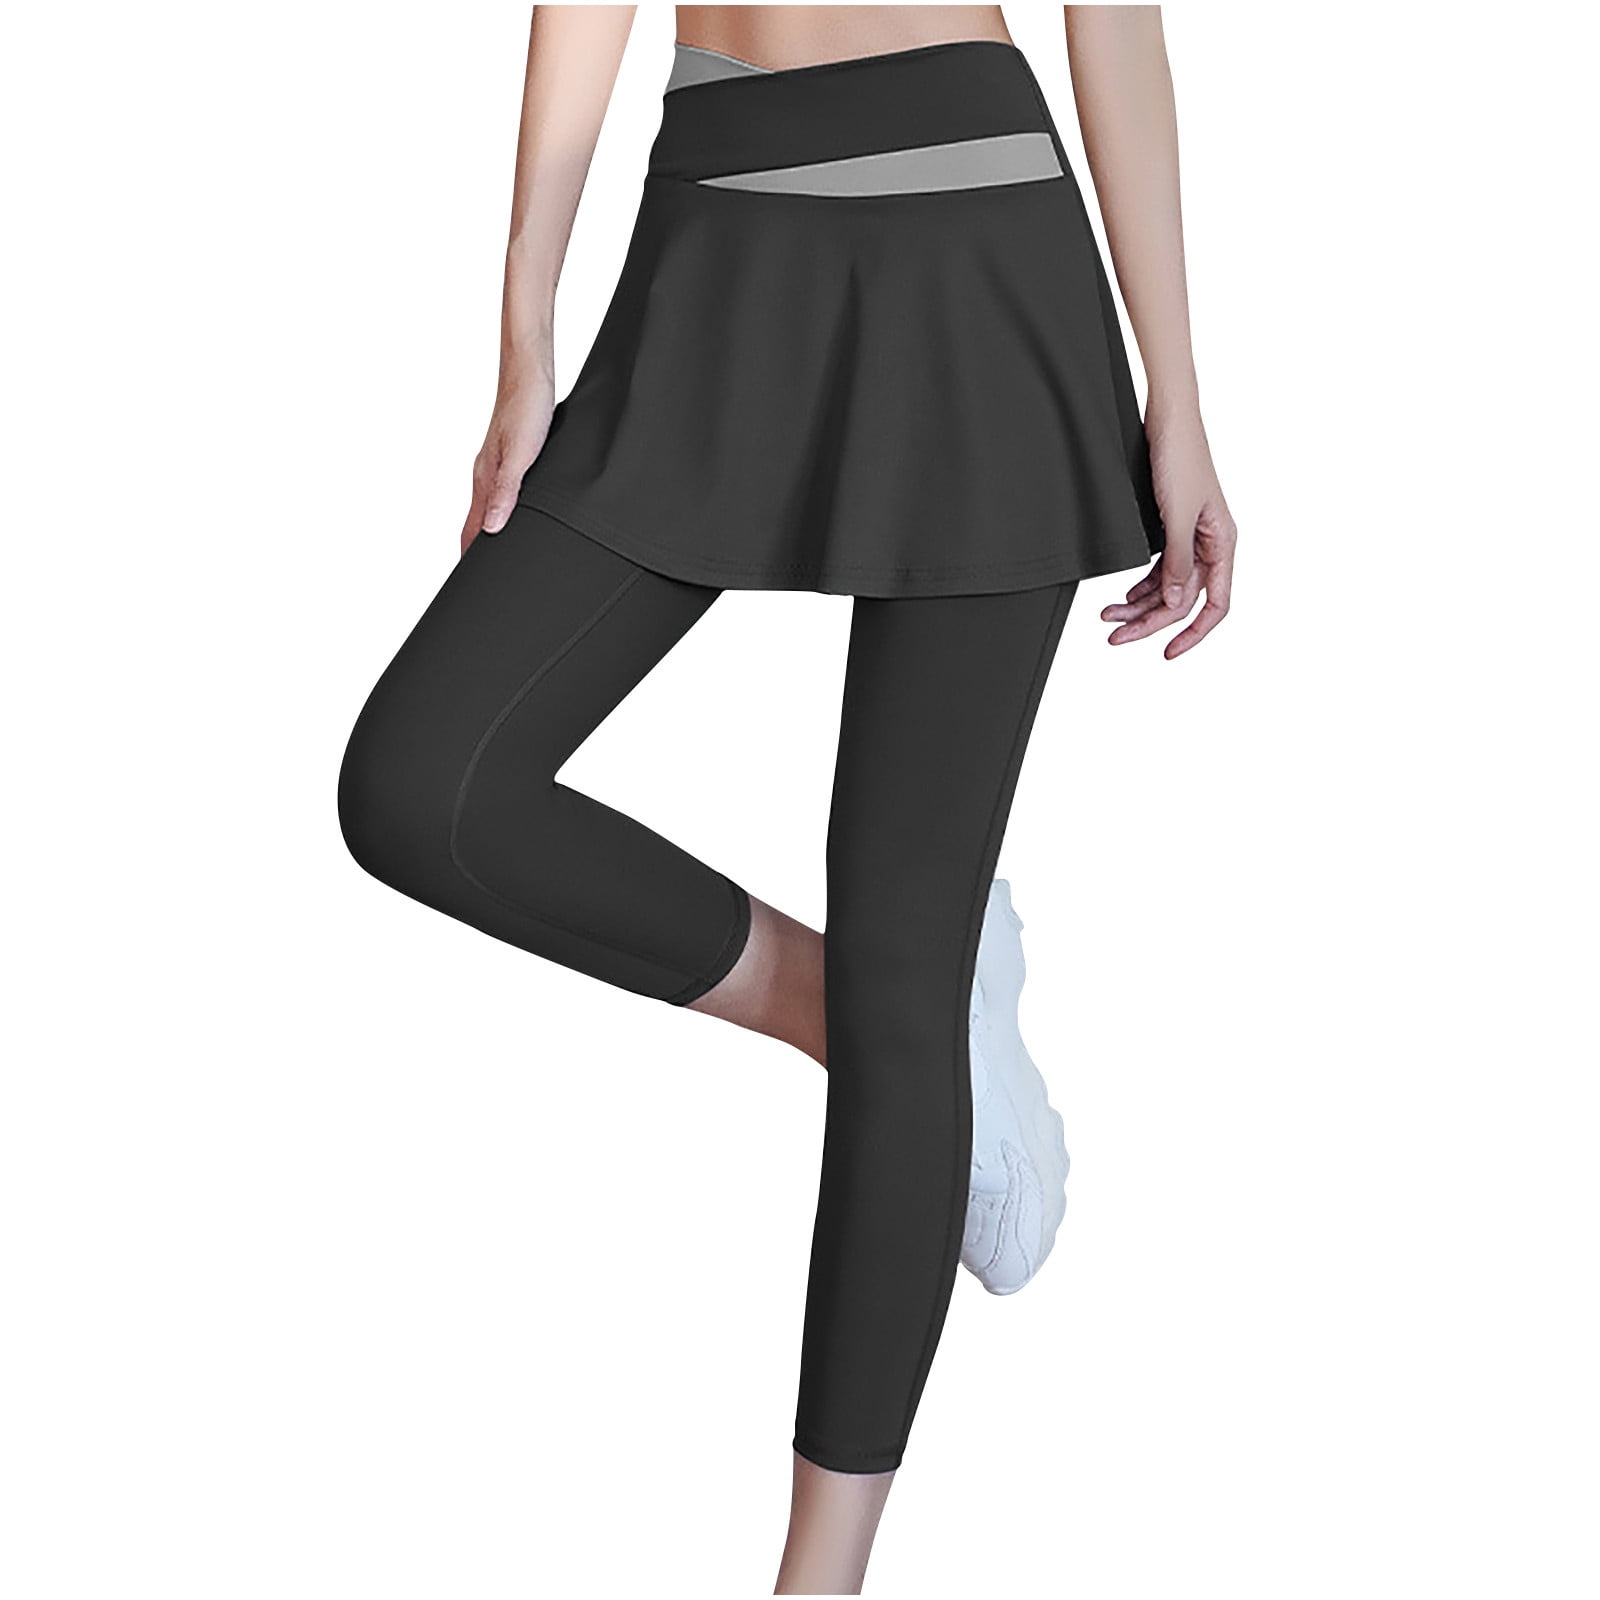 YYDGH V-Shaped High Waist Yoga Pants with Skirt Tennis & Golf Leggings with  Pocket Skirted Leggings for Women Purple M 